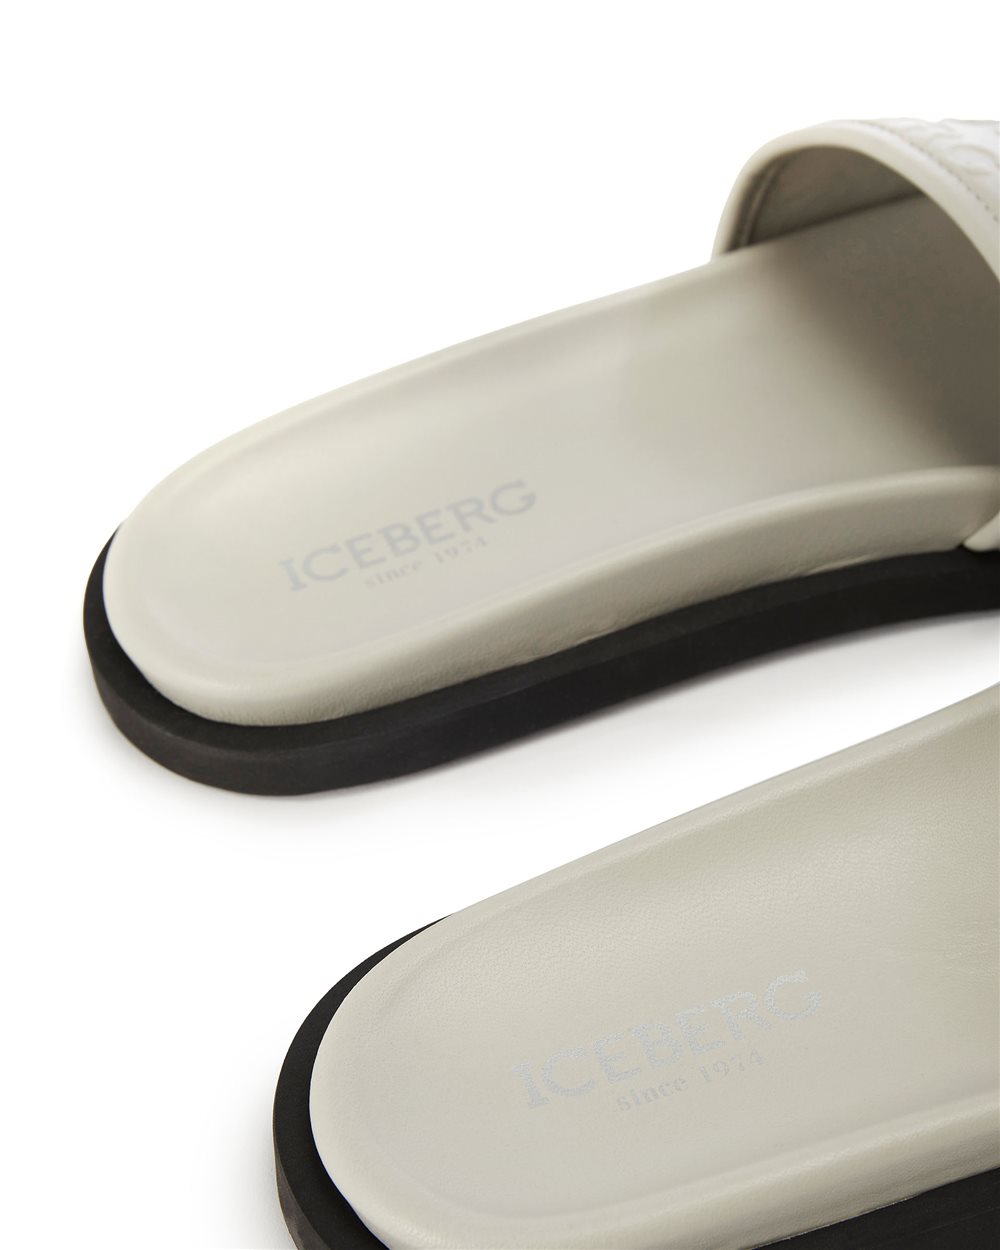 Sandalo slider con logo - Iceberg - Official Website